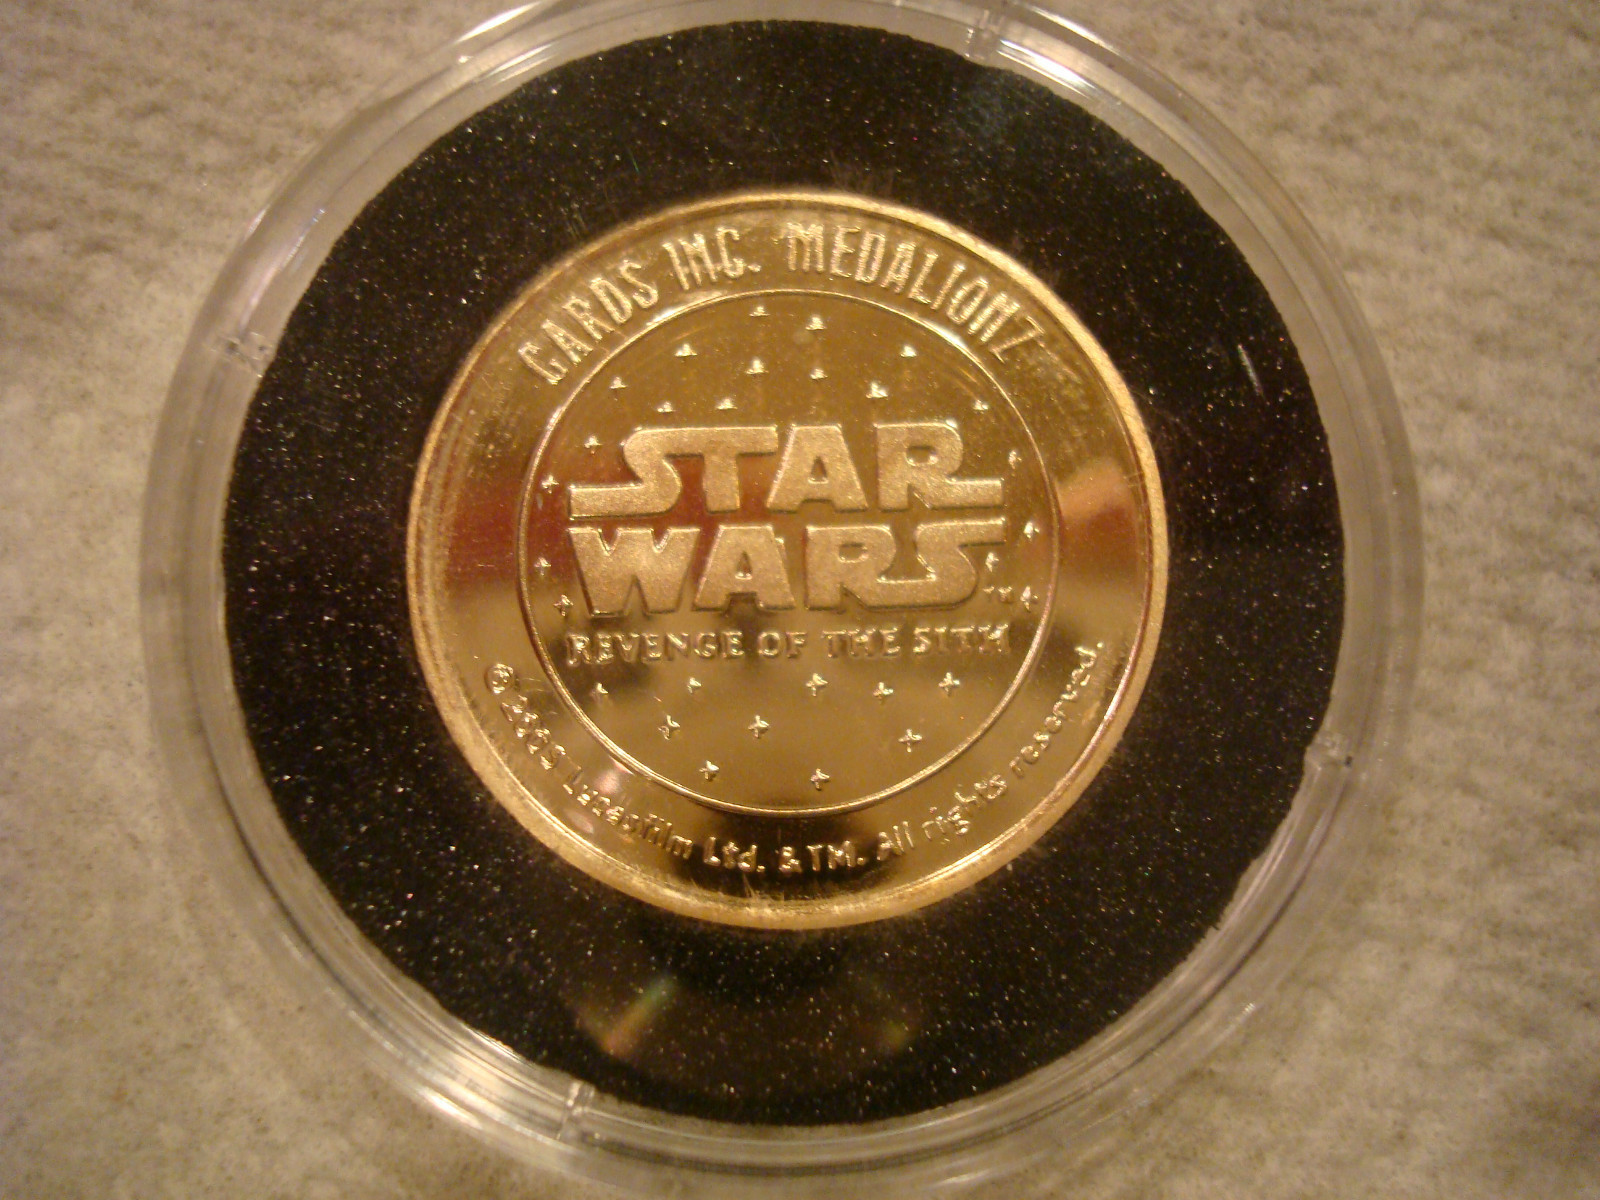 star wars coins 2005